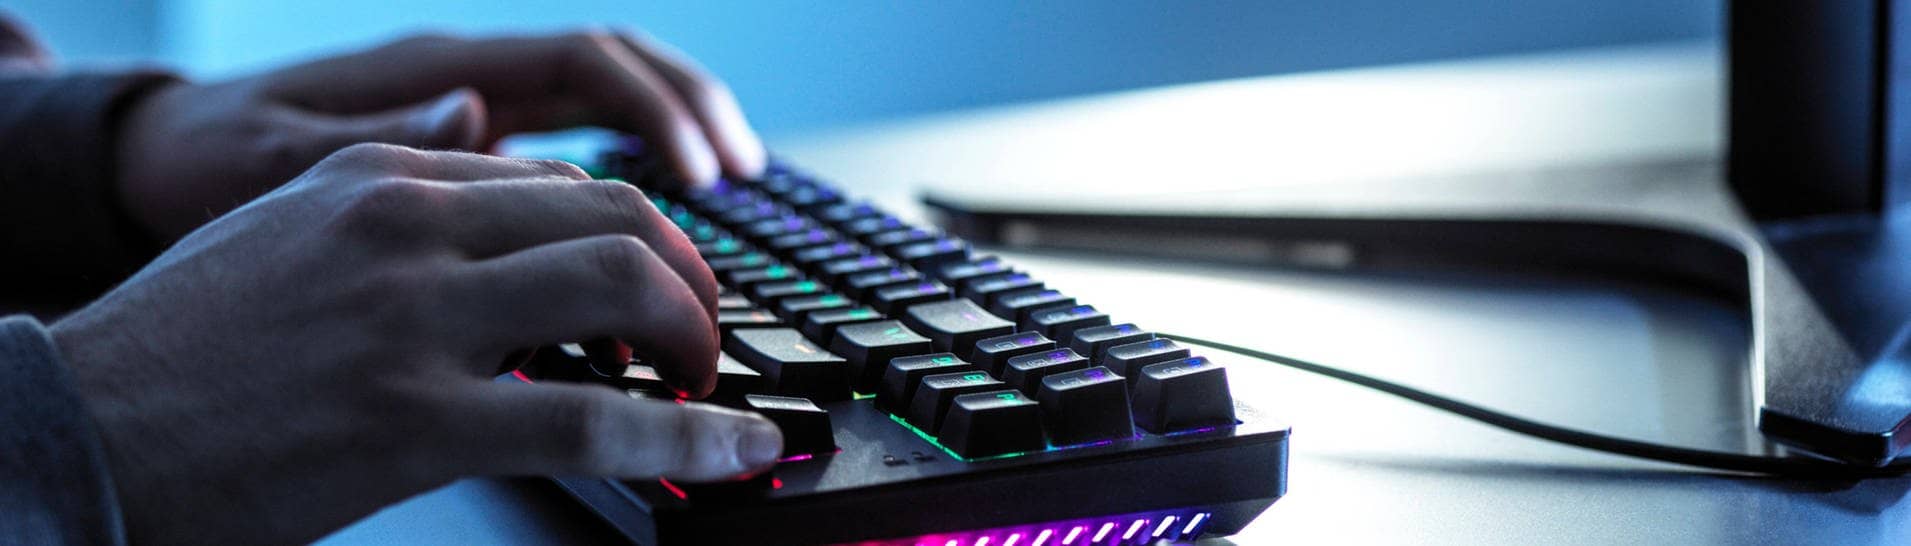 Hände liegen auf einer Gaming-Tastatur, daneben eine Gaming-Maus